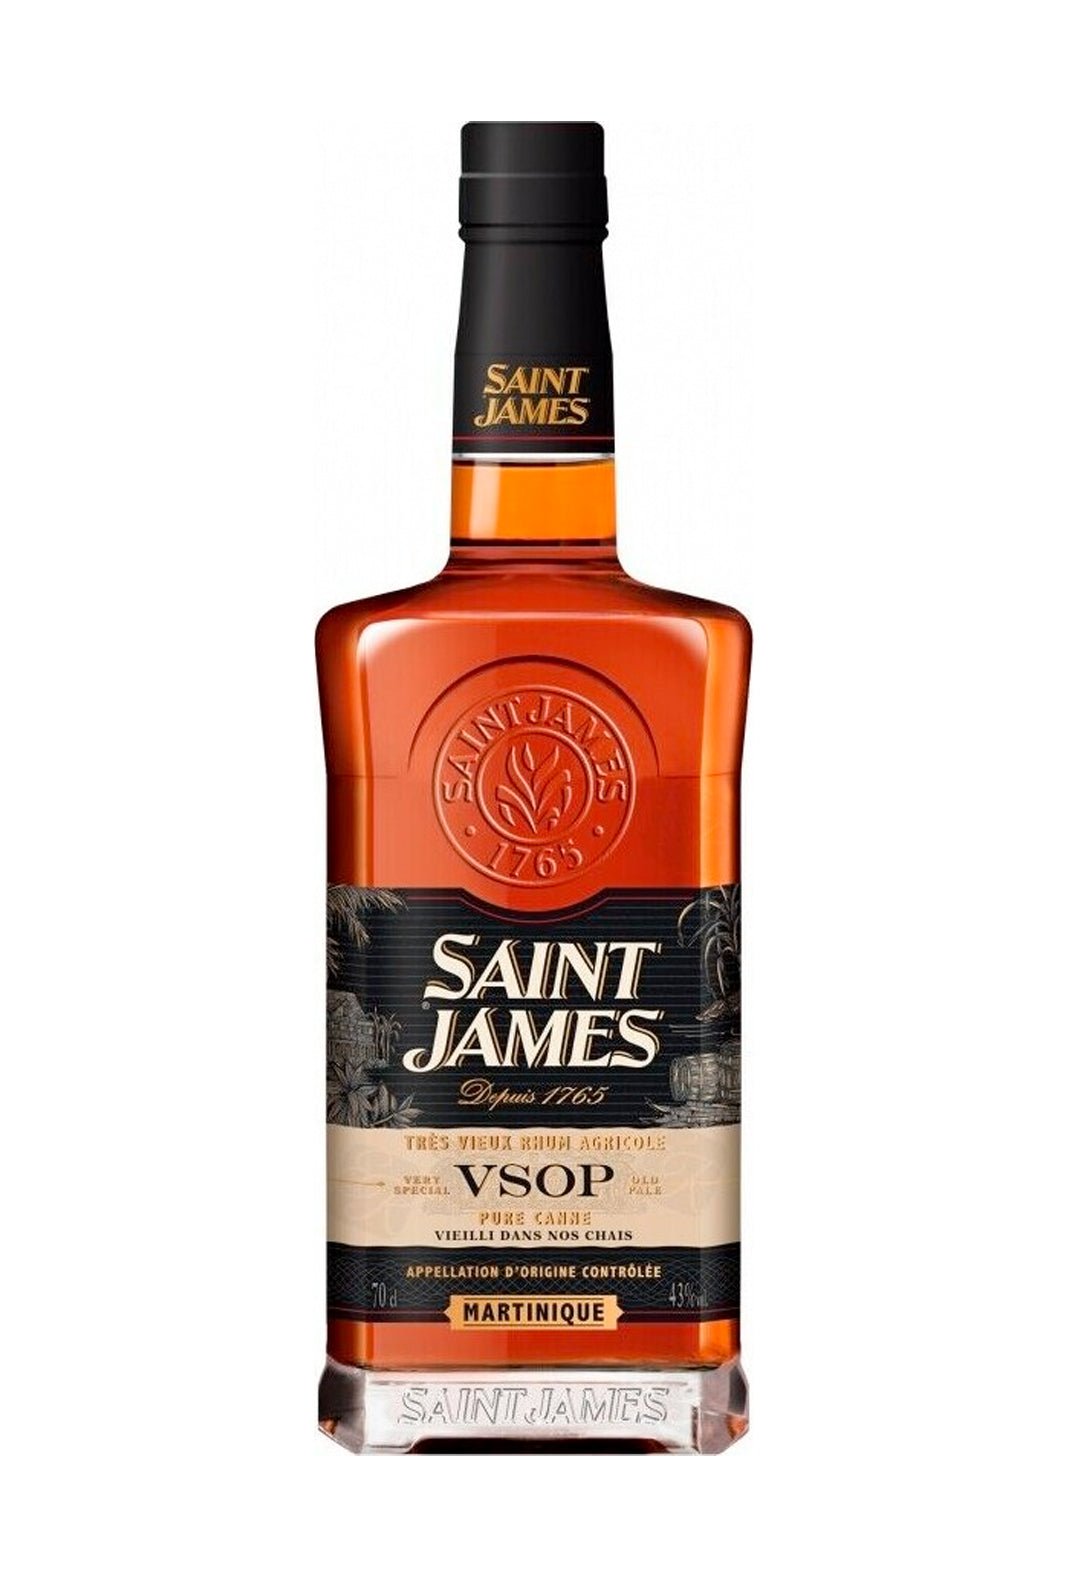 St James VSOP Rhum Agricole 43% 700ml | Rum | Shop online at Spirits of France